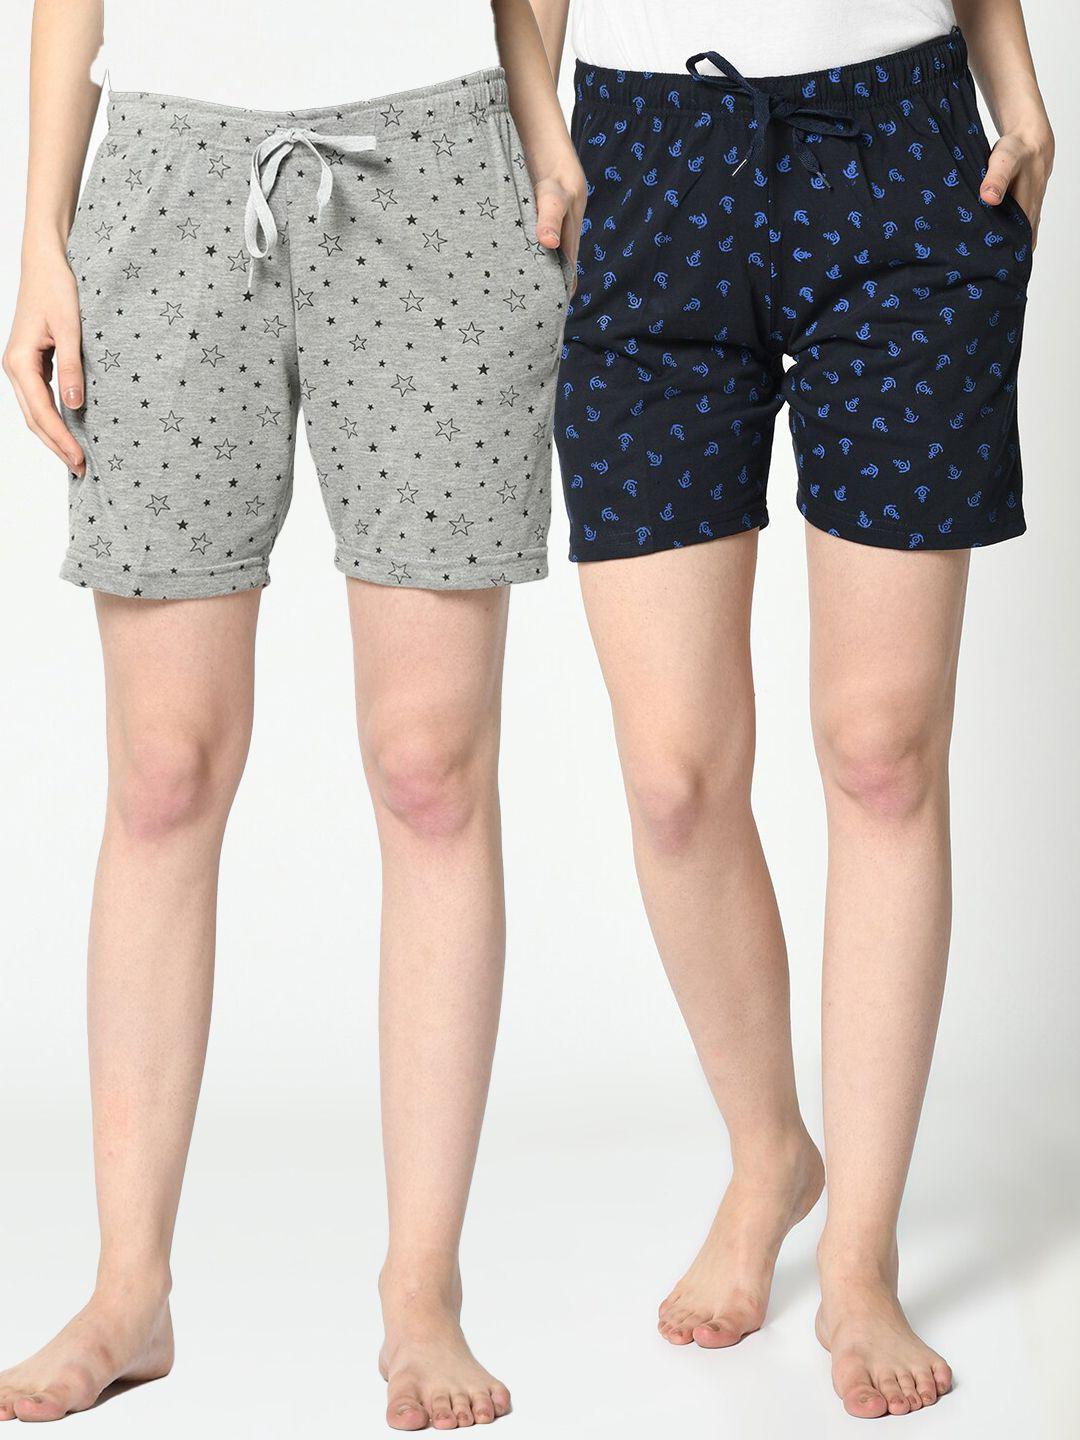 vimal jonney set of 2 women grey & navy blue printed lounge shorts